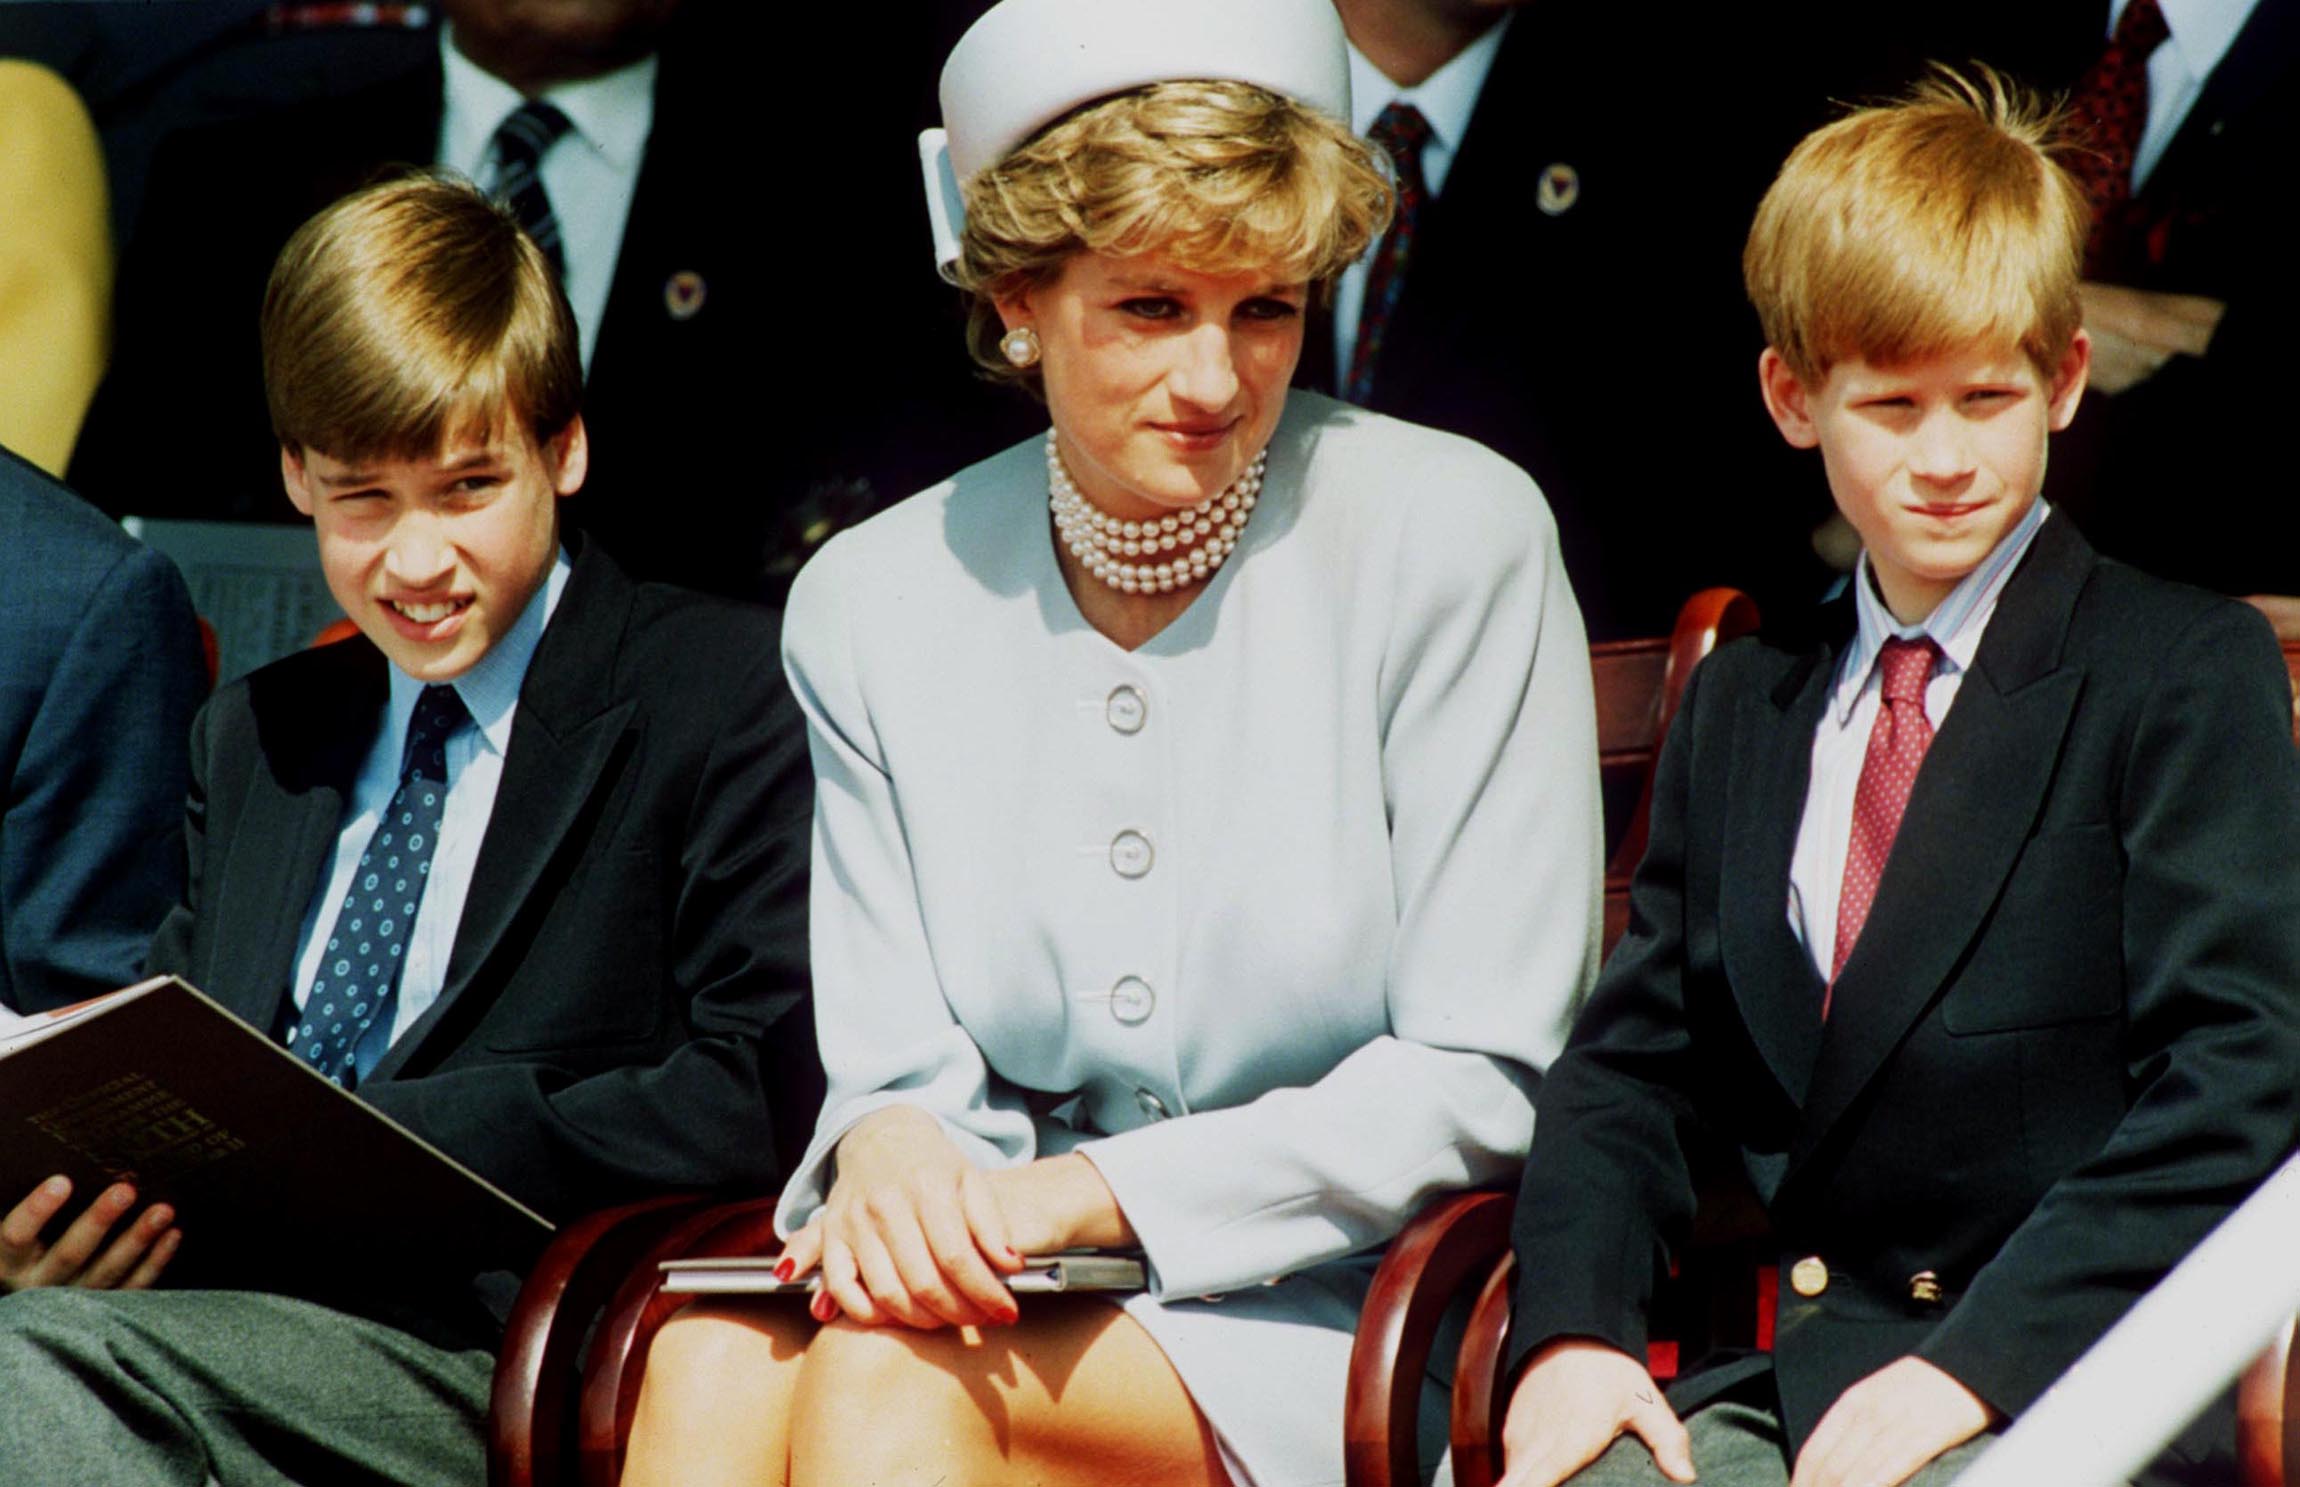 La princesa Diana con sus hijos, el príncipe William y el príncipe Harry, en el Servicio de Recuerdo de los Jefes de Estado en Hyde Park, el 7 de mayo de 1995 en Londres, Inglaterra. | Foto: Getty Images